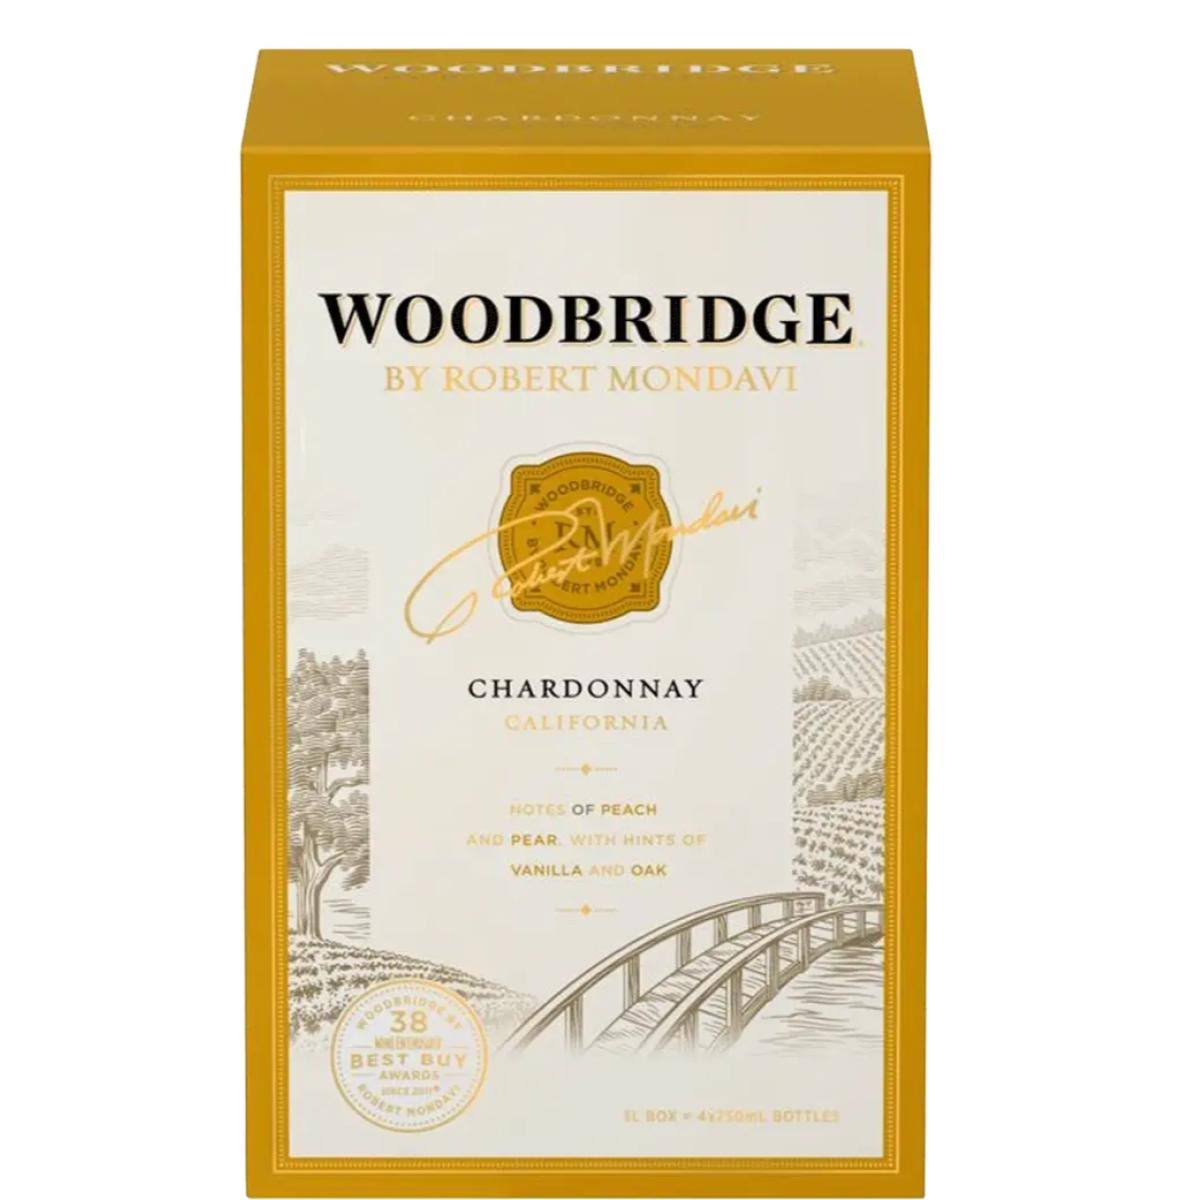 Woodbridge Chardonnay, California - 4 pack, 750 ml bottles